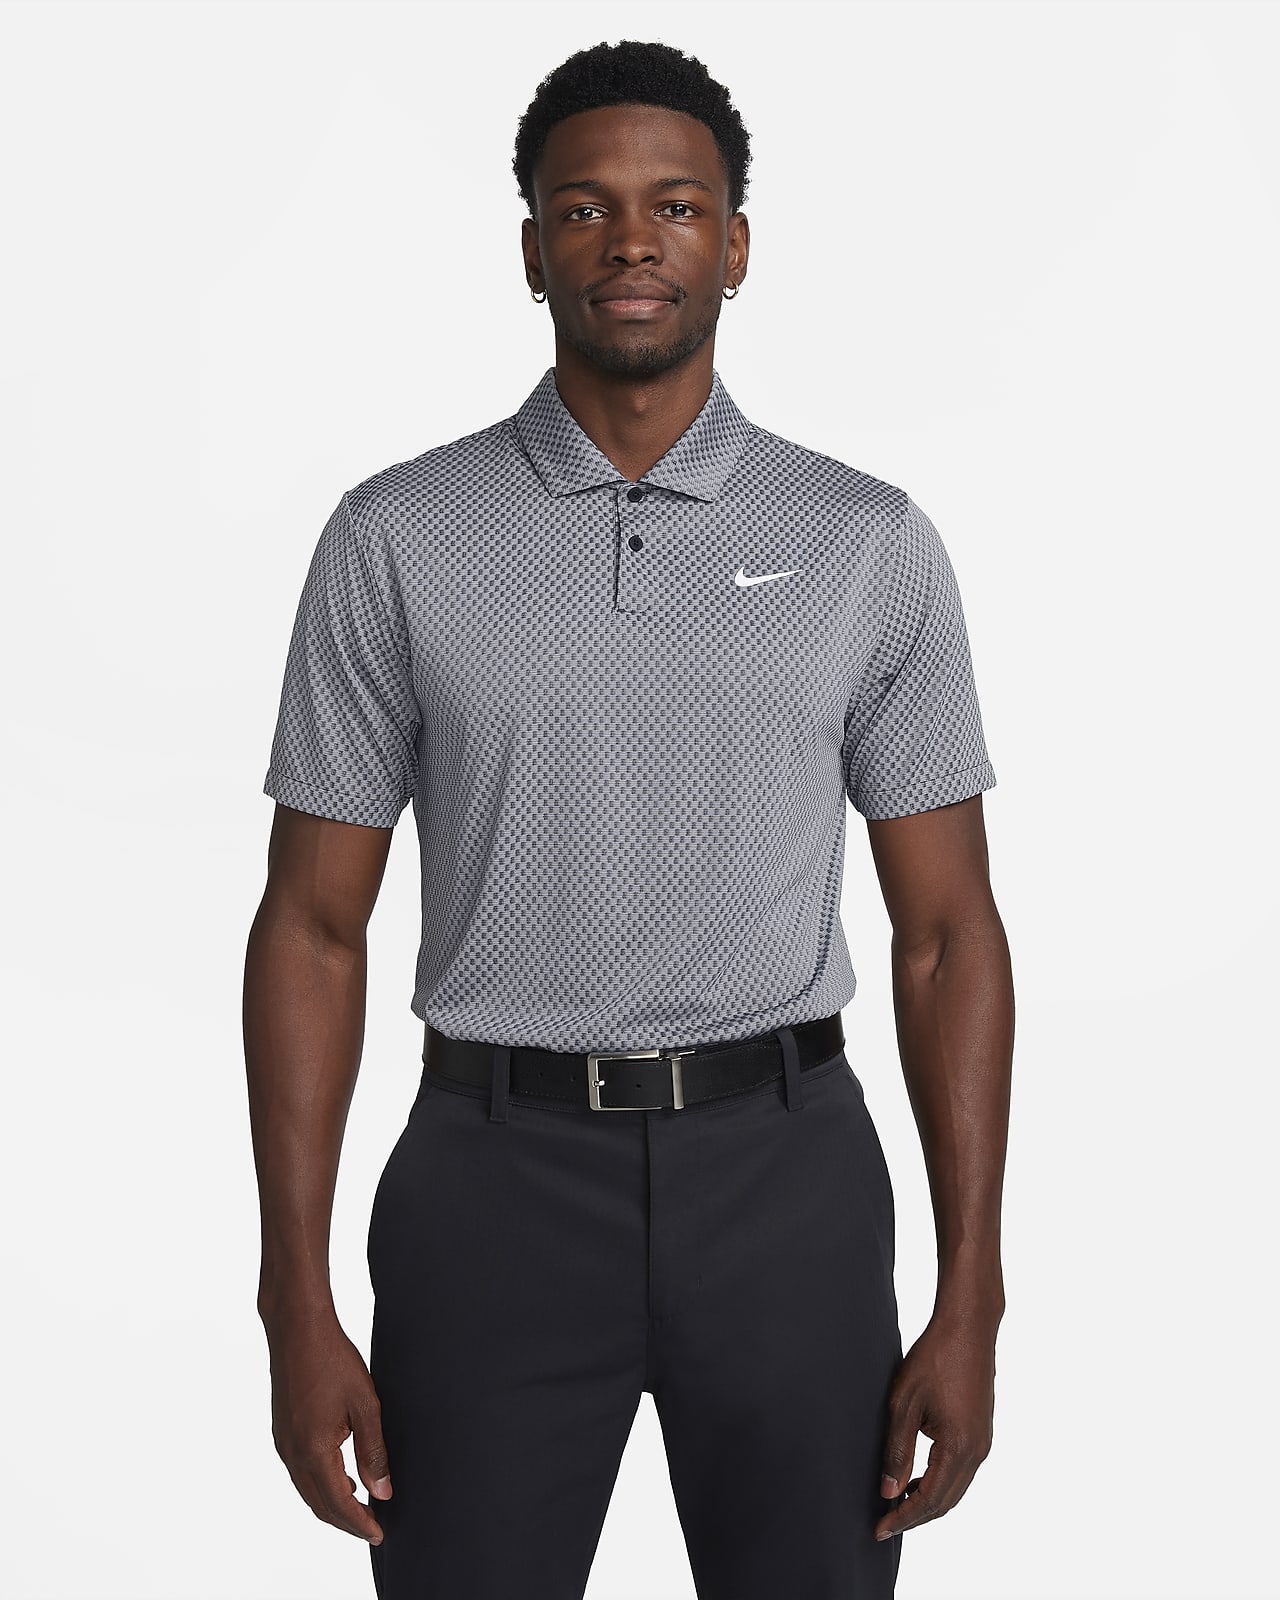 Nike Tour Dri-FIT stripet golfpoloskjorte til herre